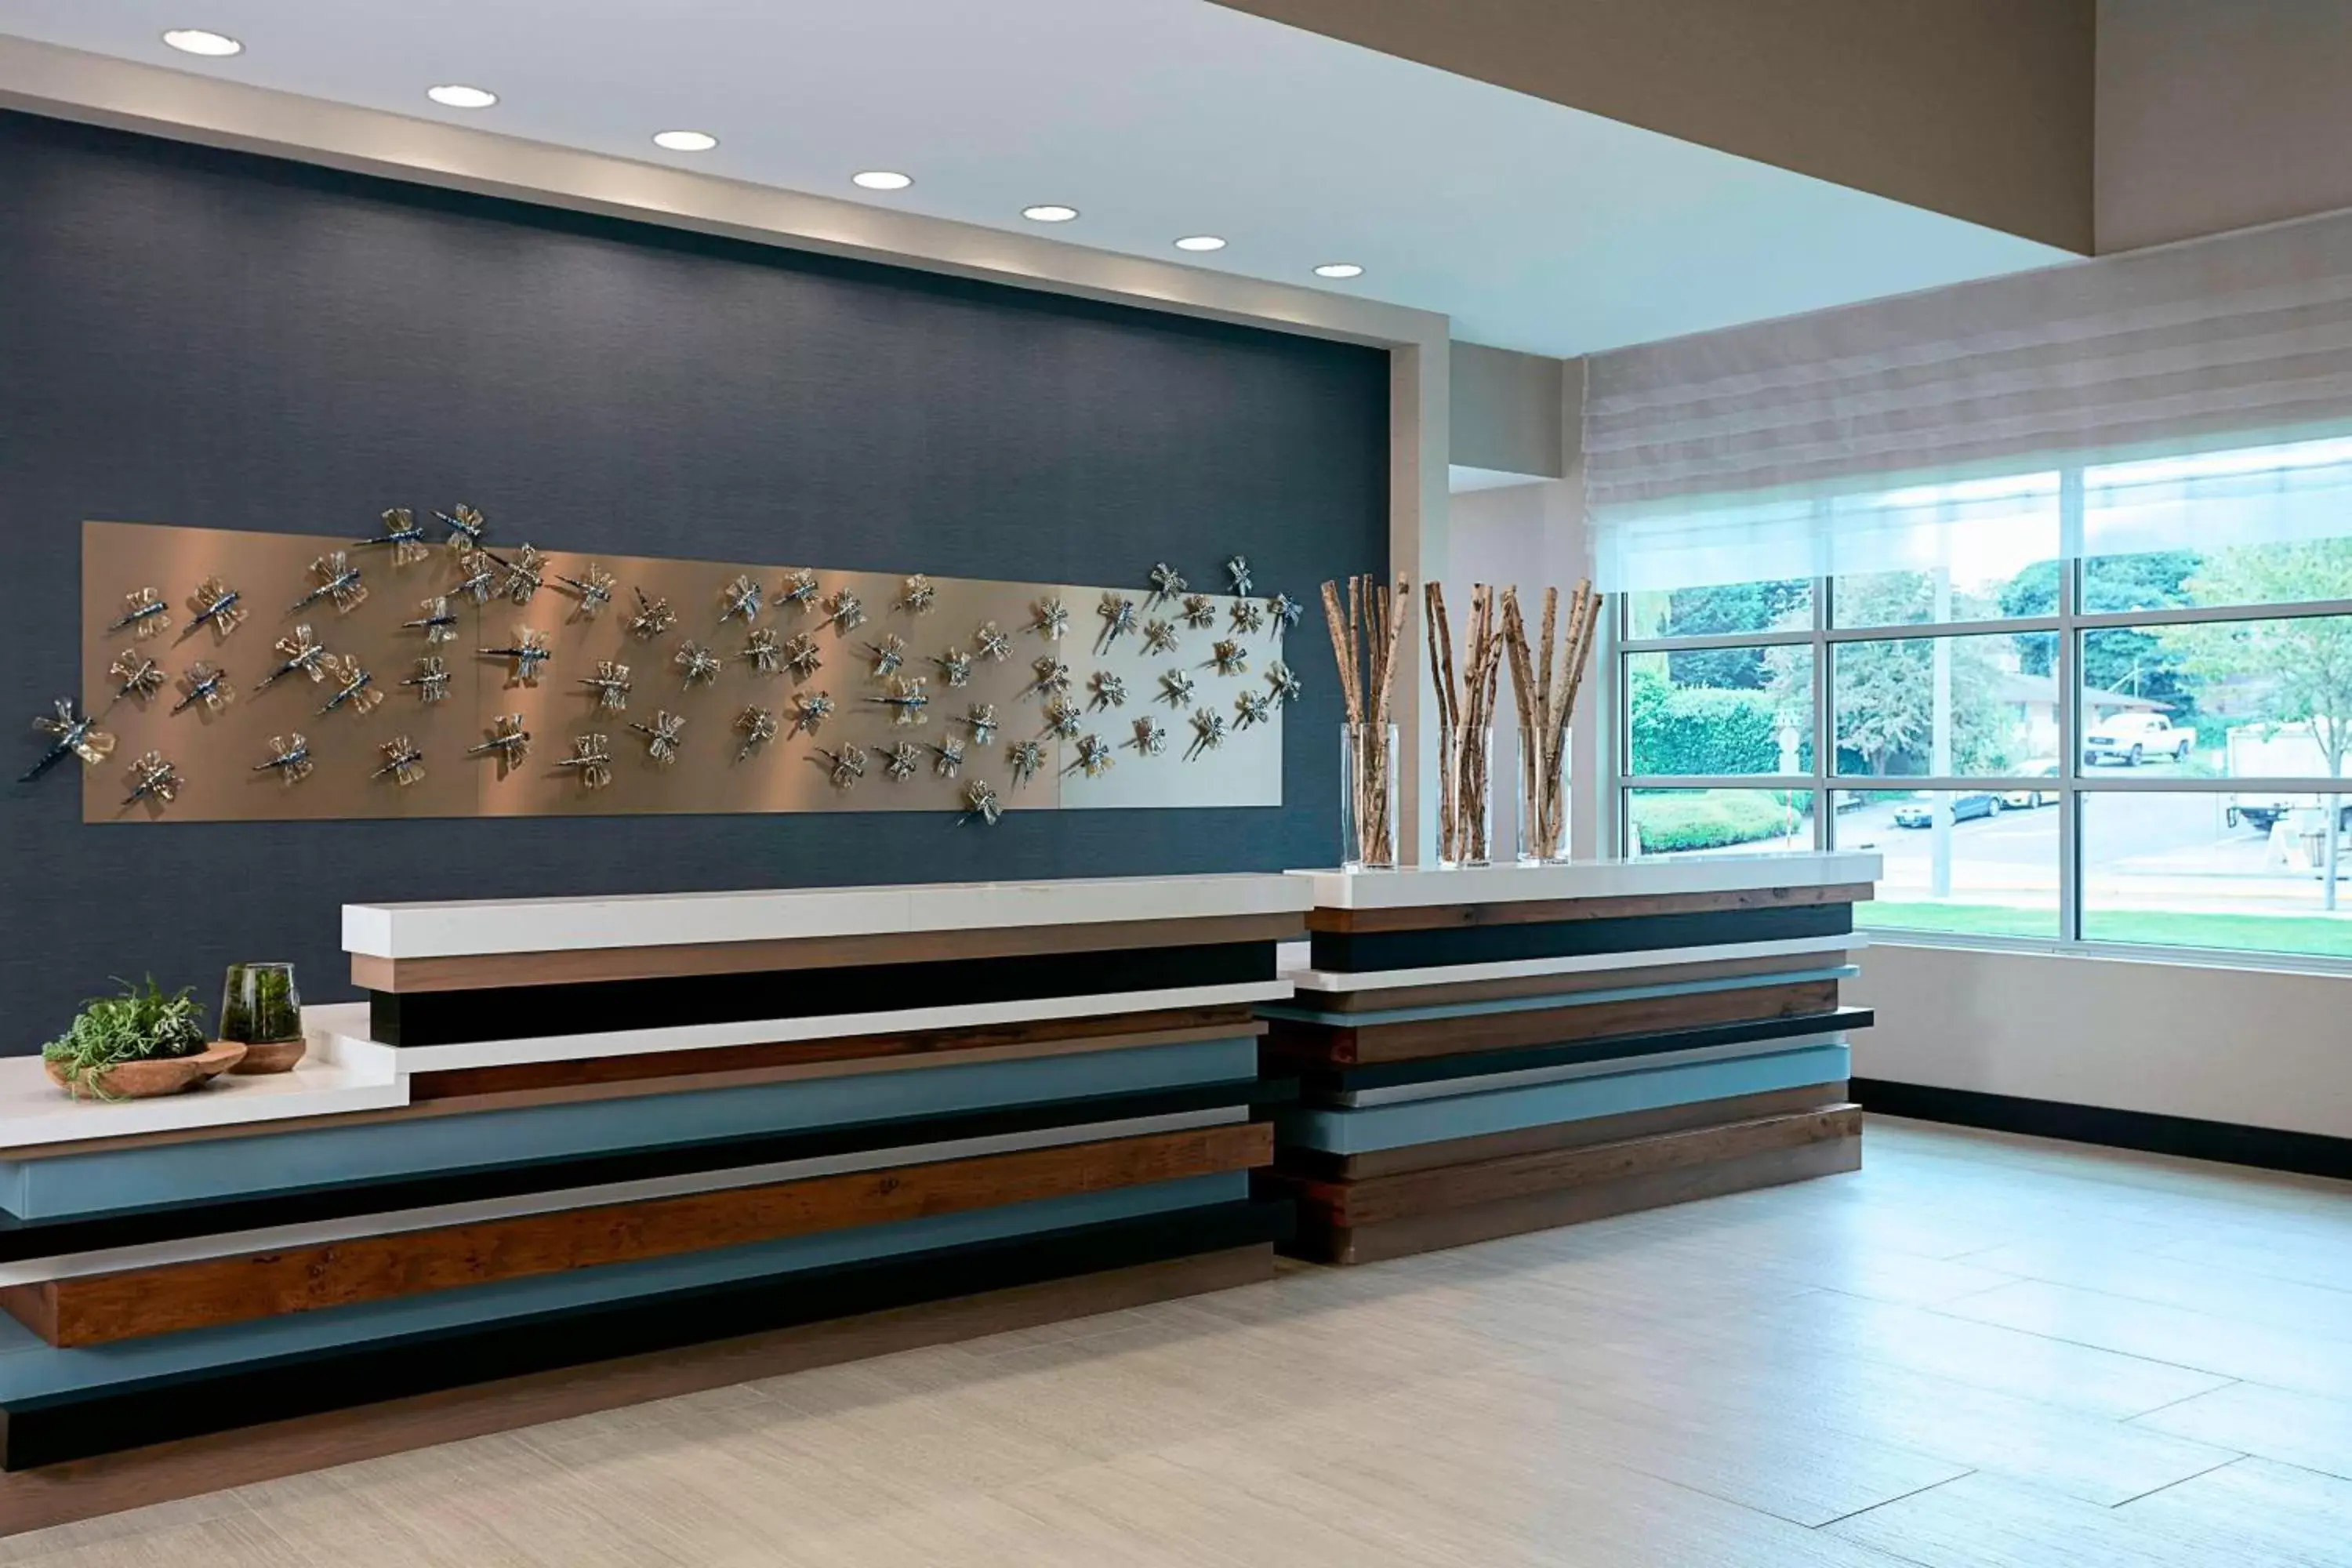 Lobby or reception, Lobby/Reception in Seattle Marriott Bellevue